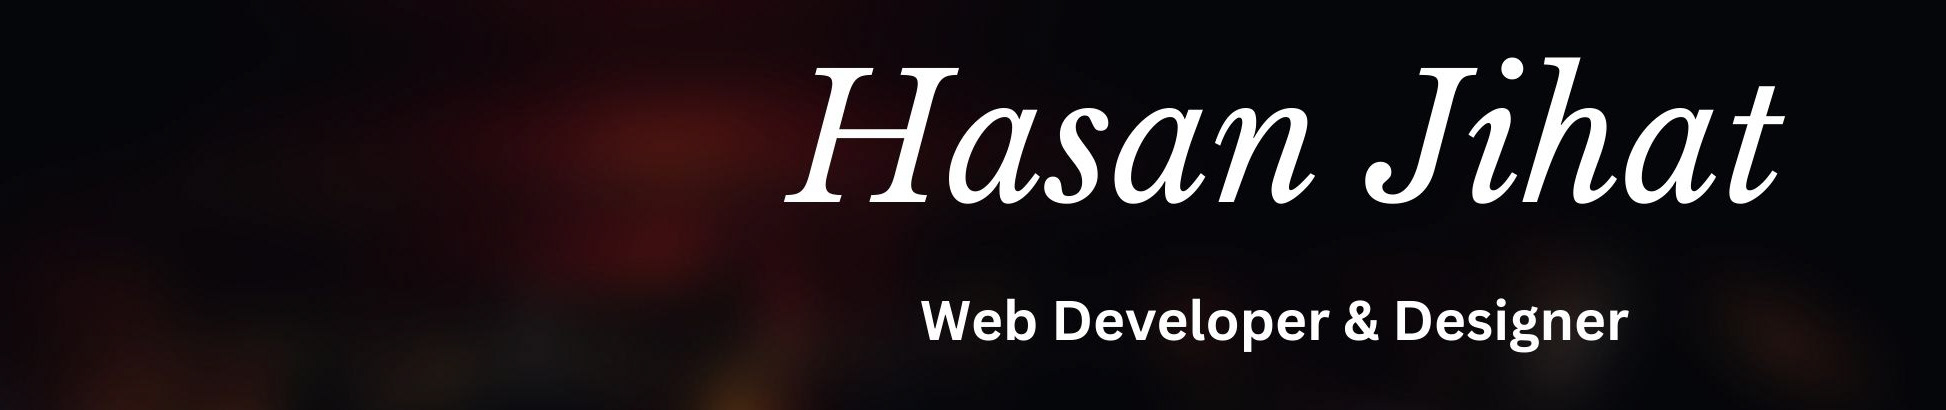 Hasan Jihat's profile banner